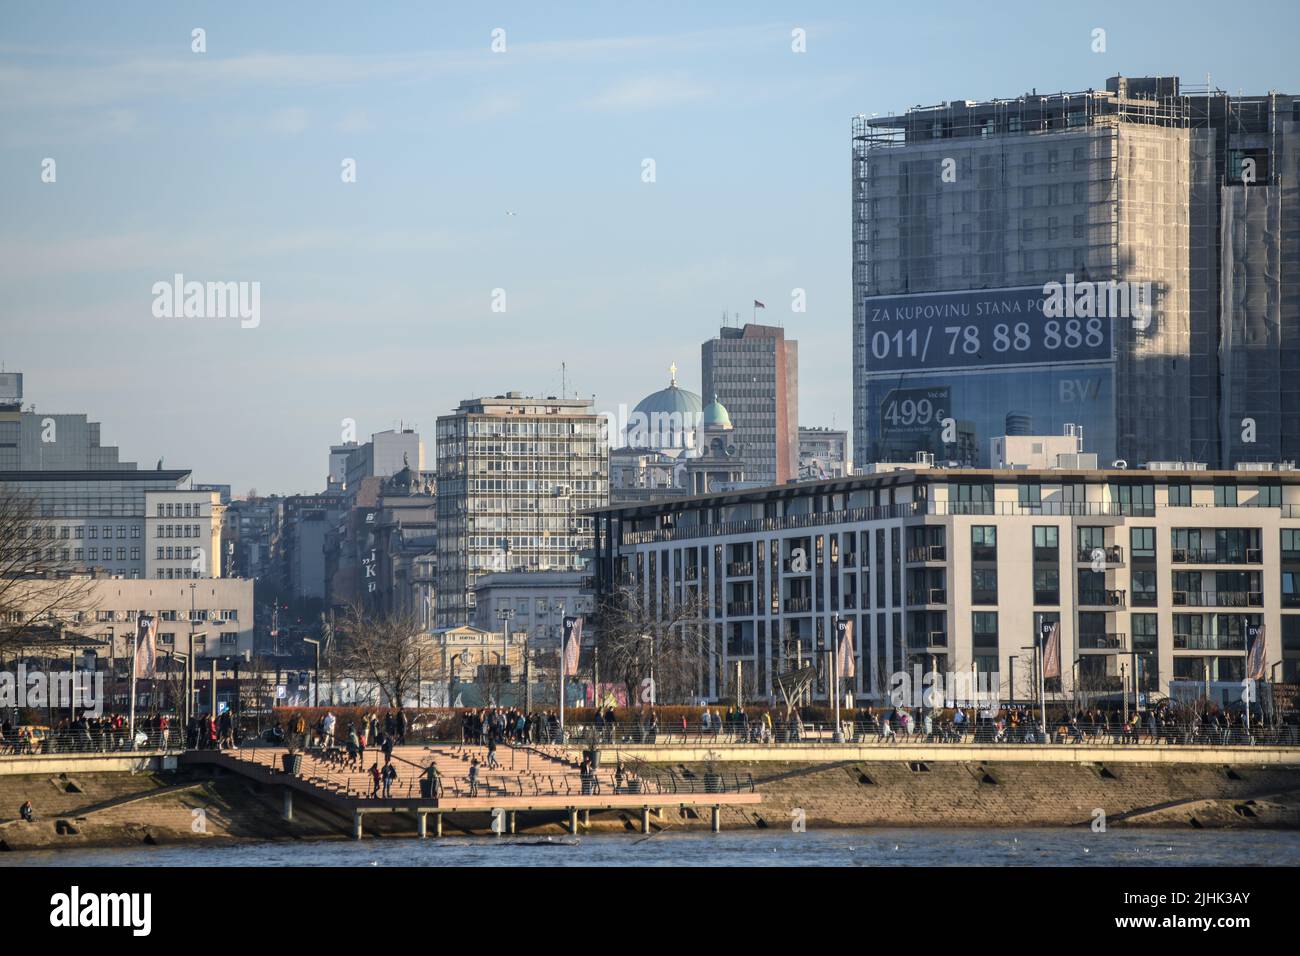 Belgrade Waterfront: Construcción de nuevos edificios en la ribera de Sava. Serbia Foto de stock